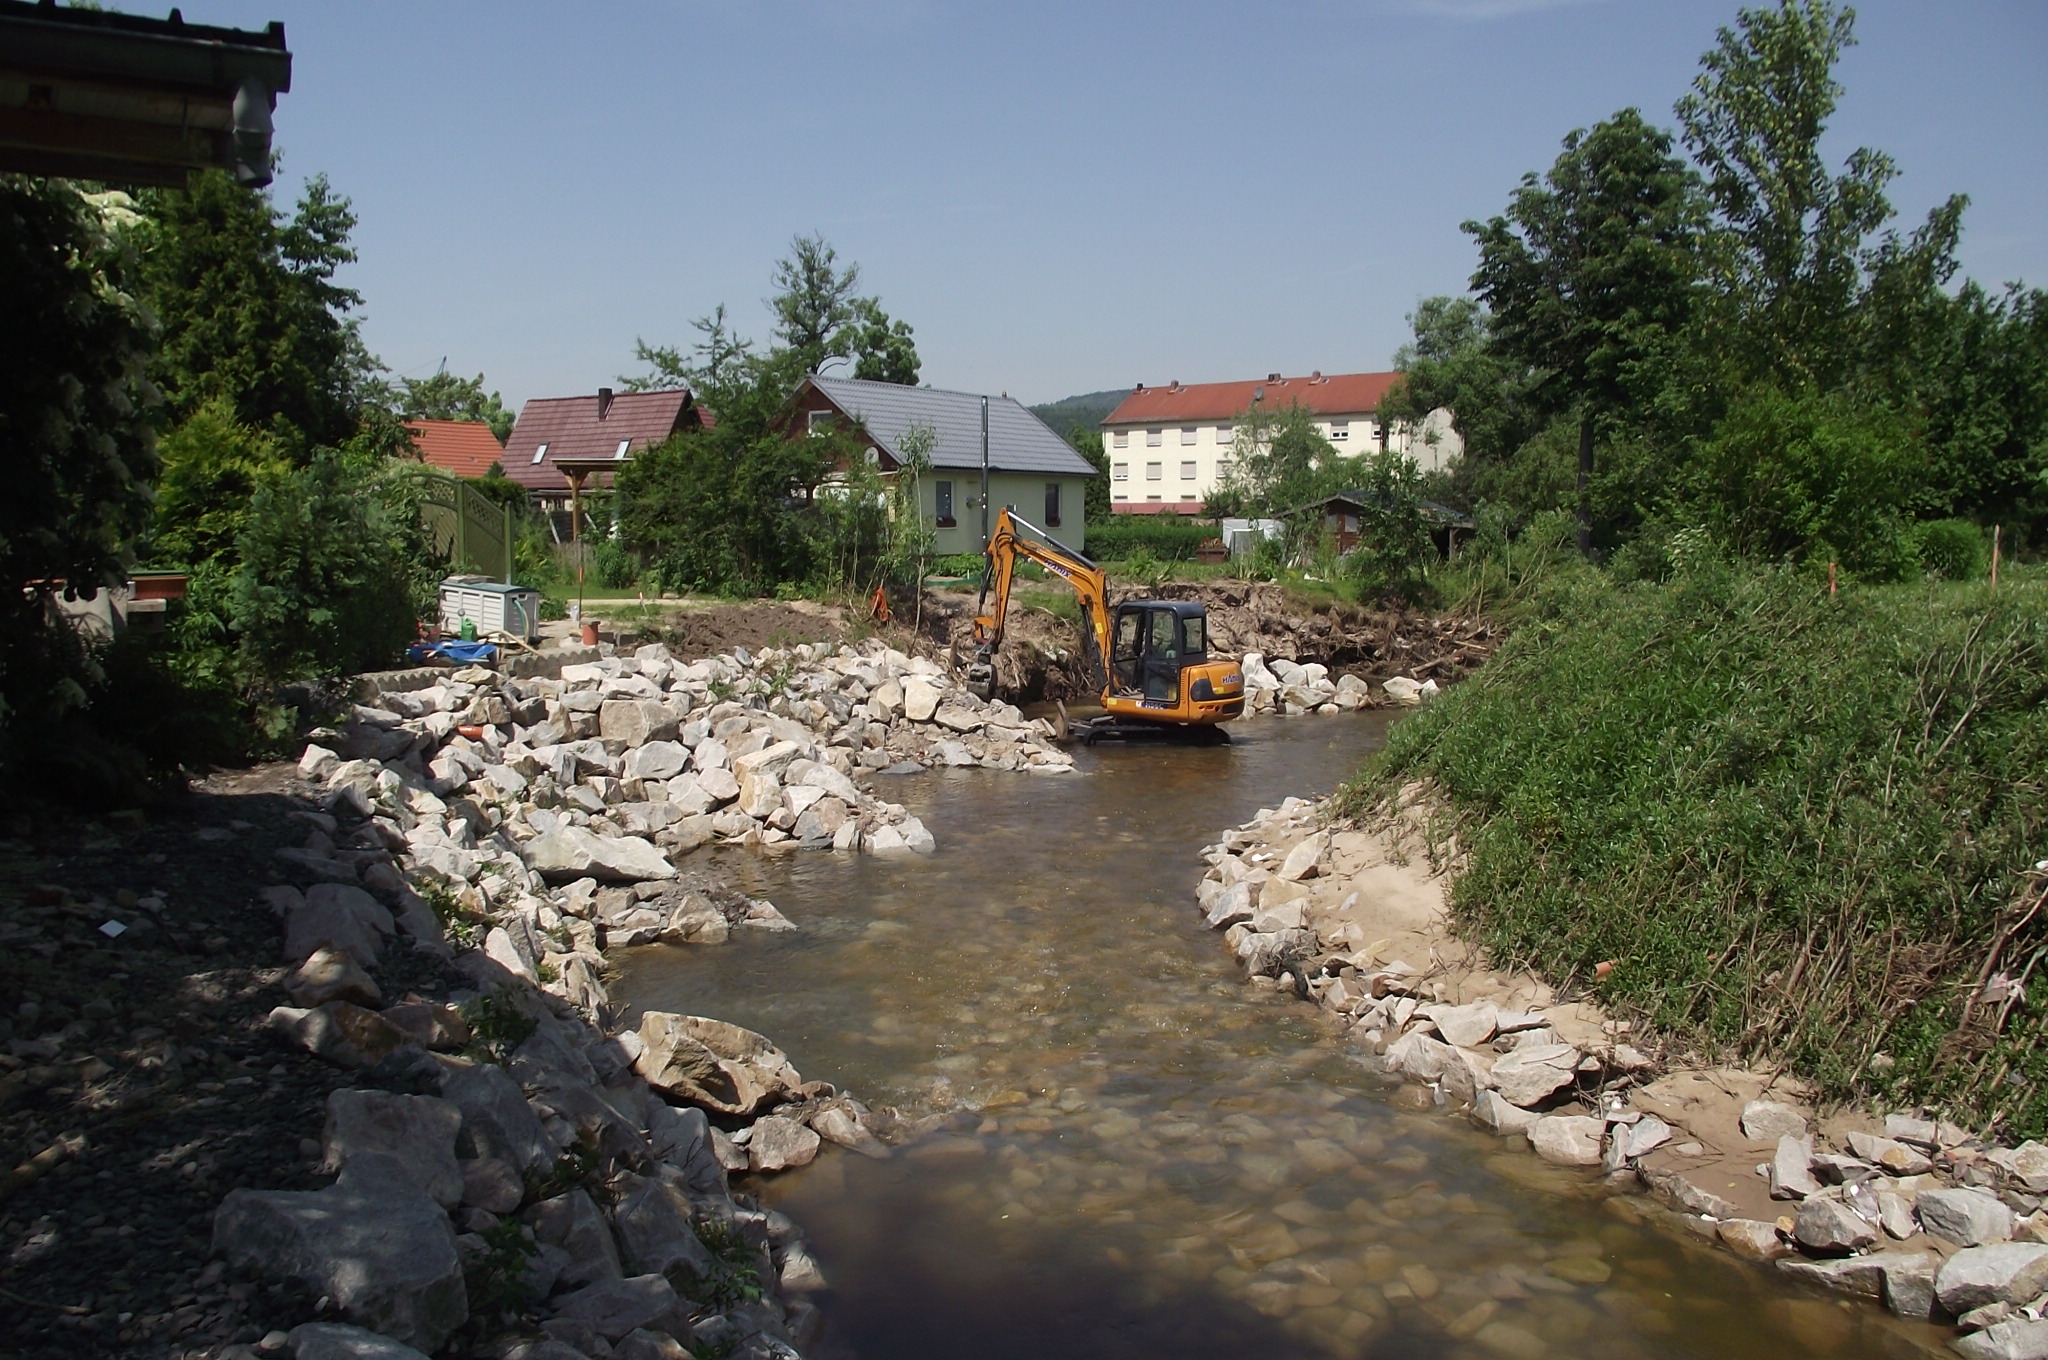 Ufersicherung und Strukturverbesserung mit inklinanten Buhnen an der Roda in Laasdorf